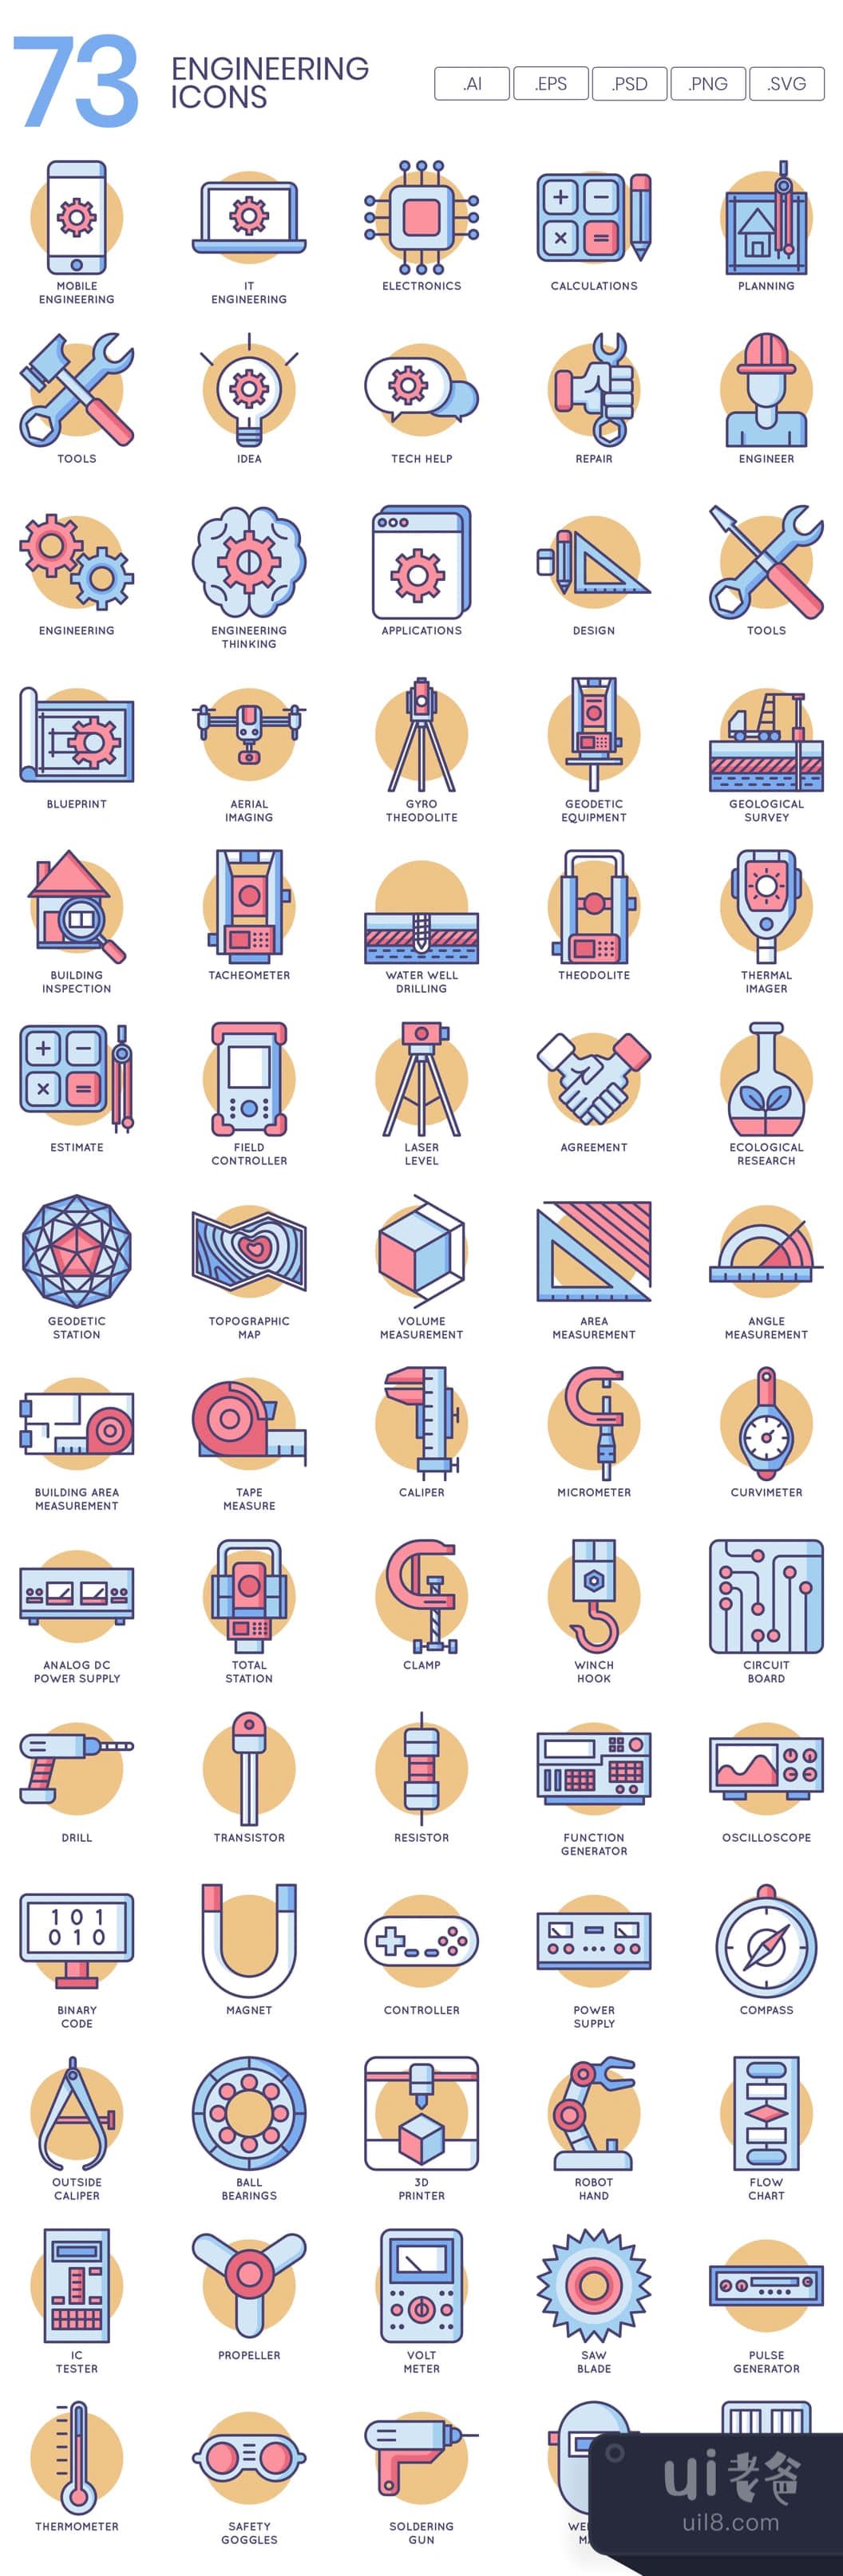 70个工程图标 (70 Engineering Icons)插图1